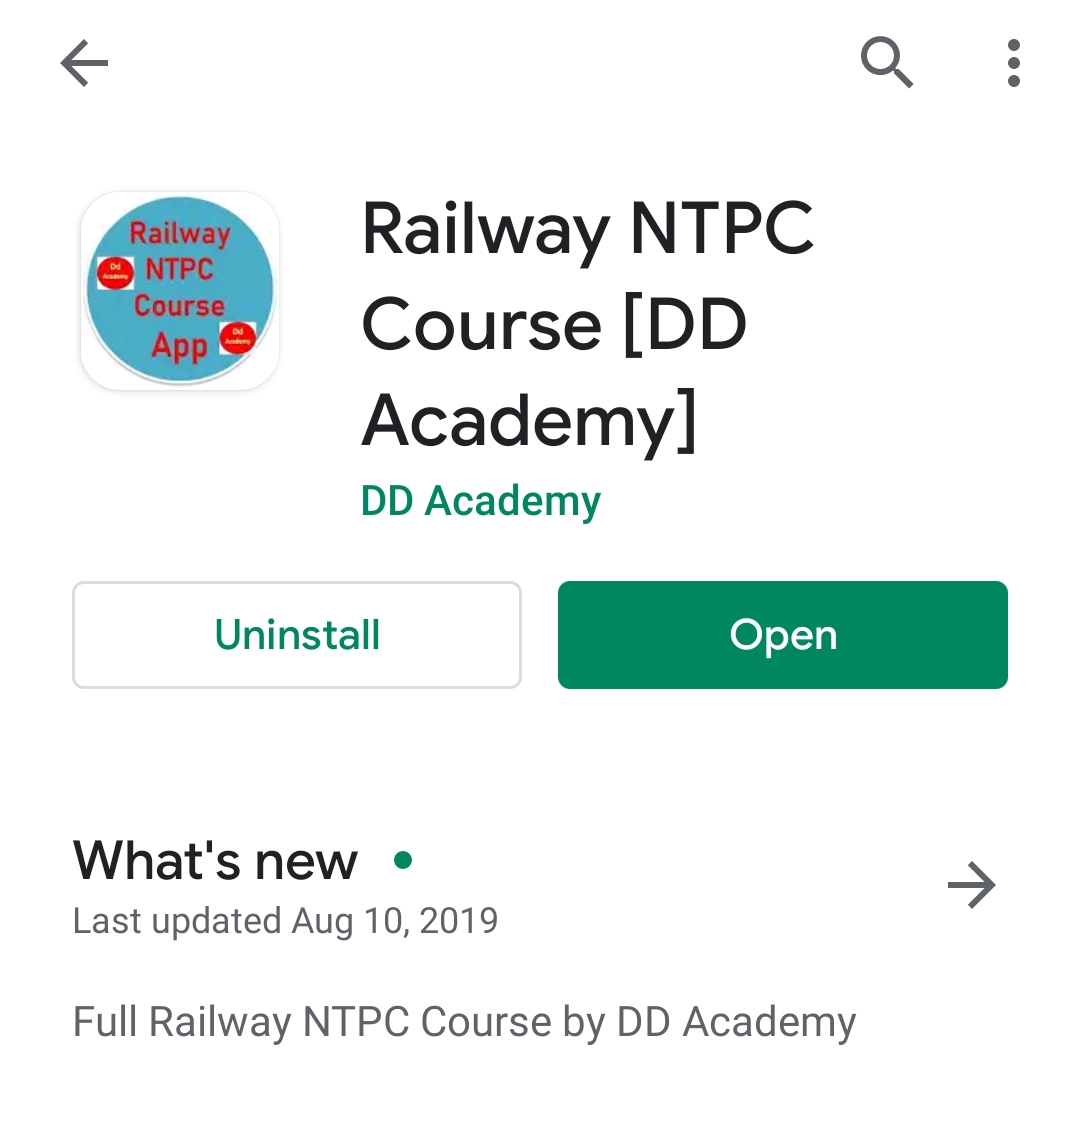 Free Railway NTPC App by DD Academy